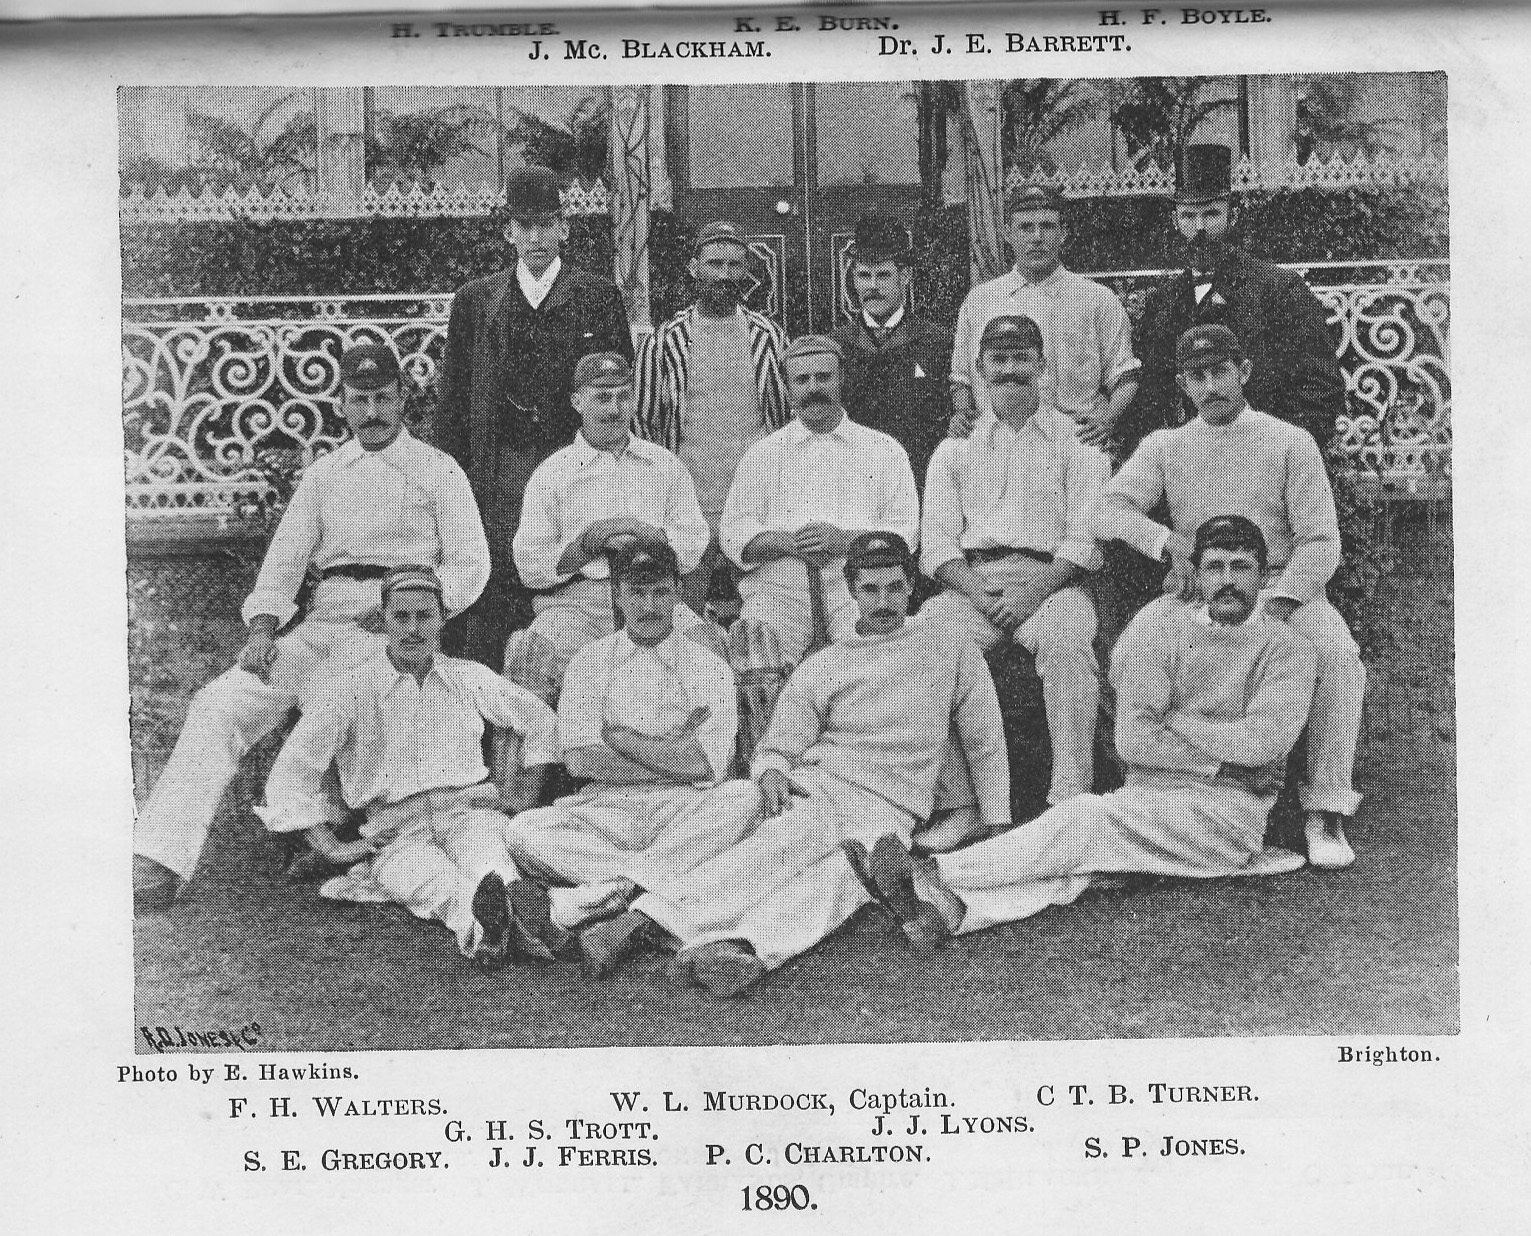 The 1890 Australian Cricket Team.